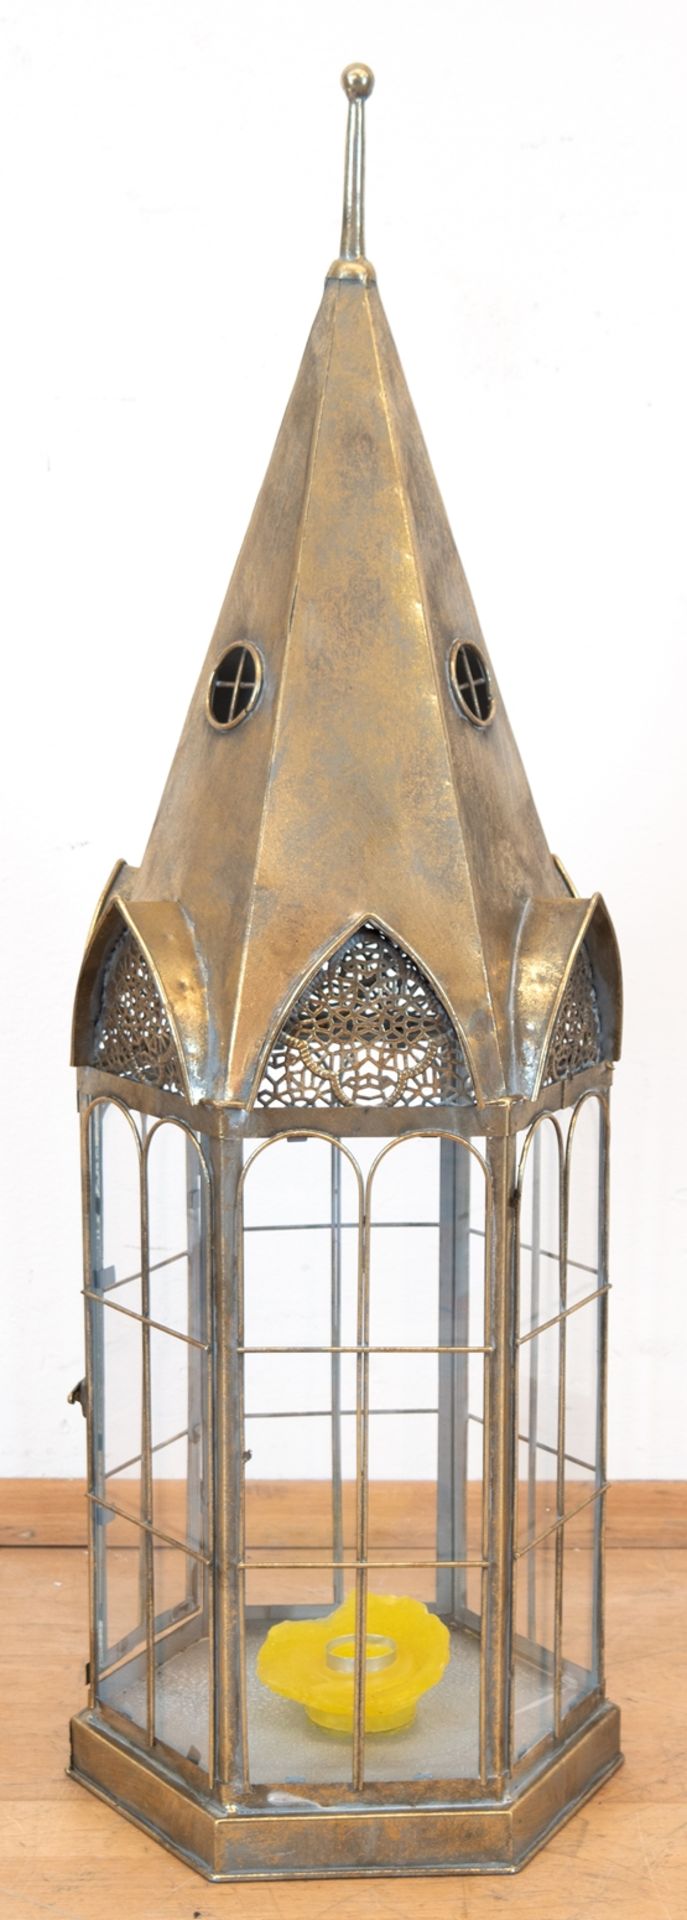 Laterne/ Windlicht, Metall, goldfarbend gefasst, in Form eines Turmes, mit gesprossten Fenstern, G